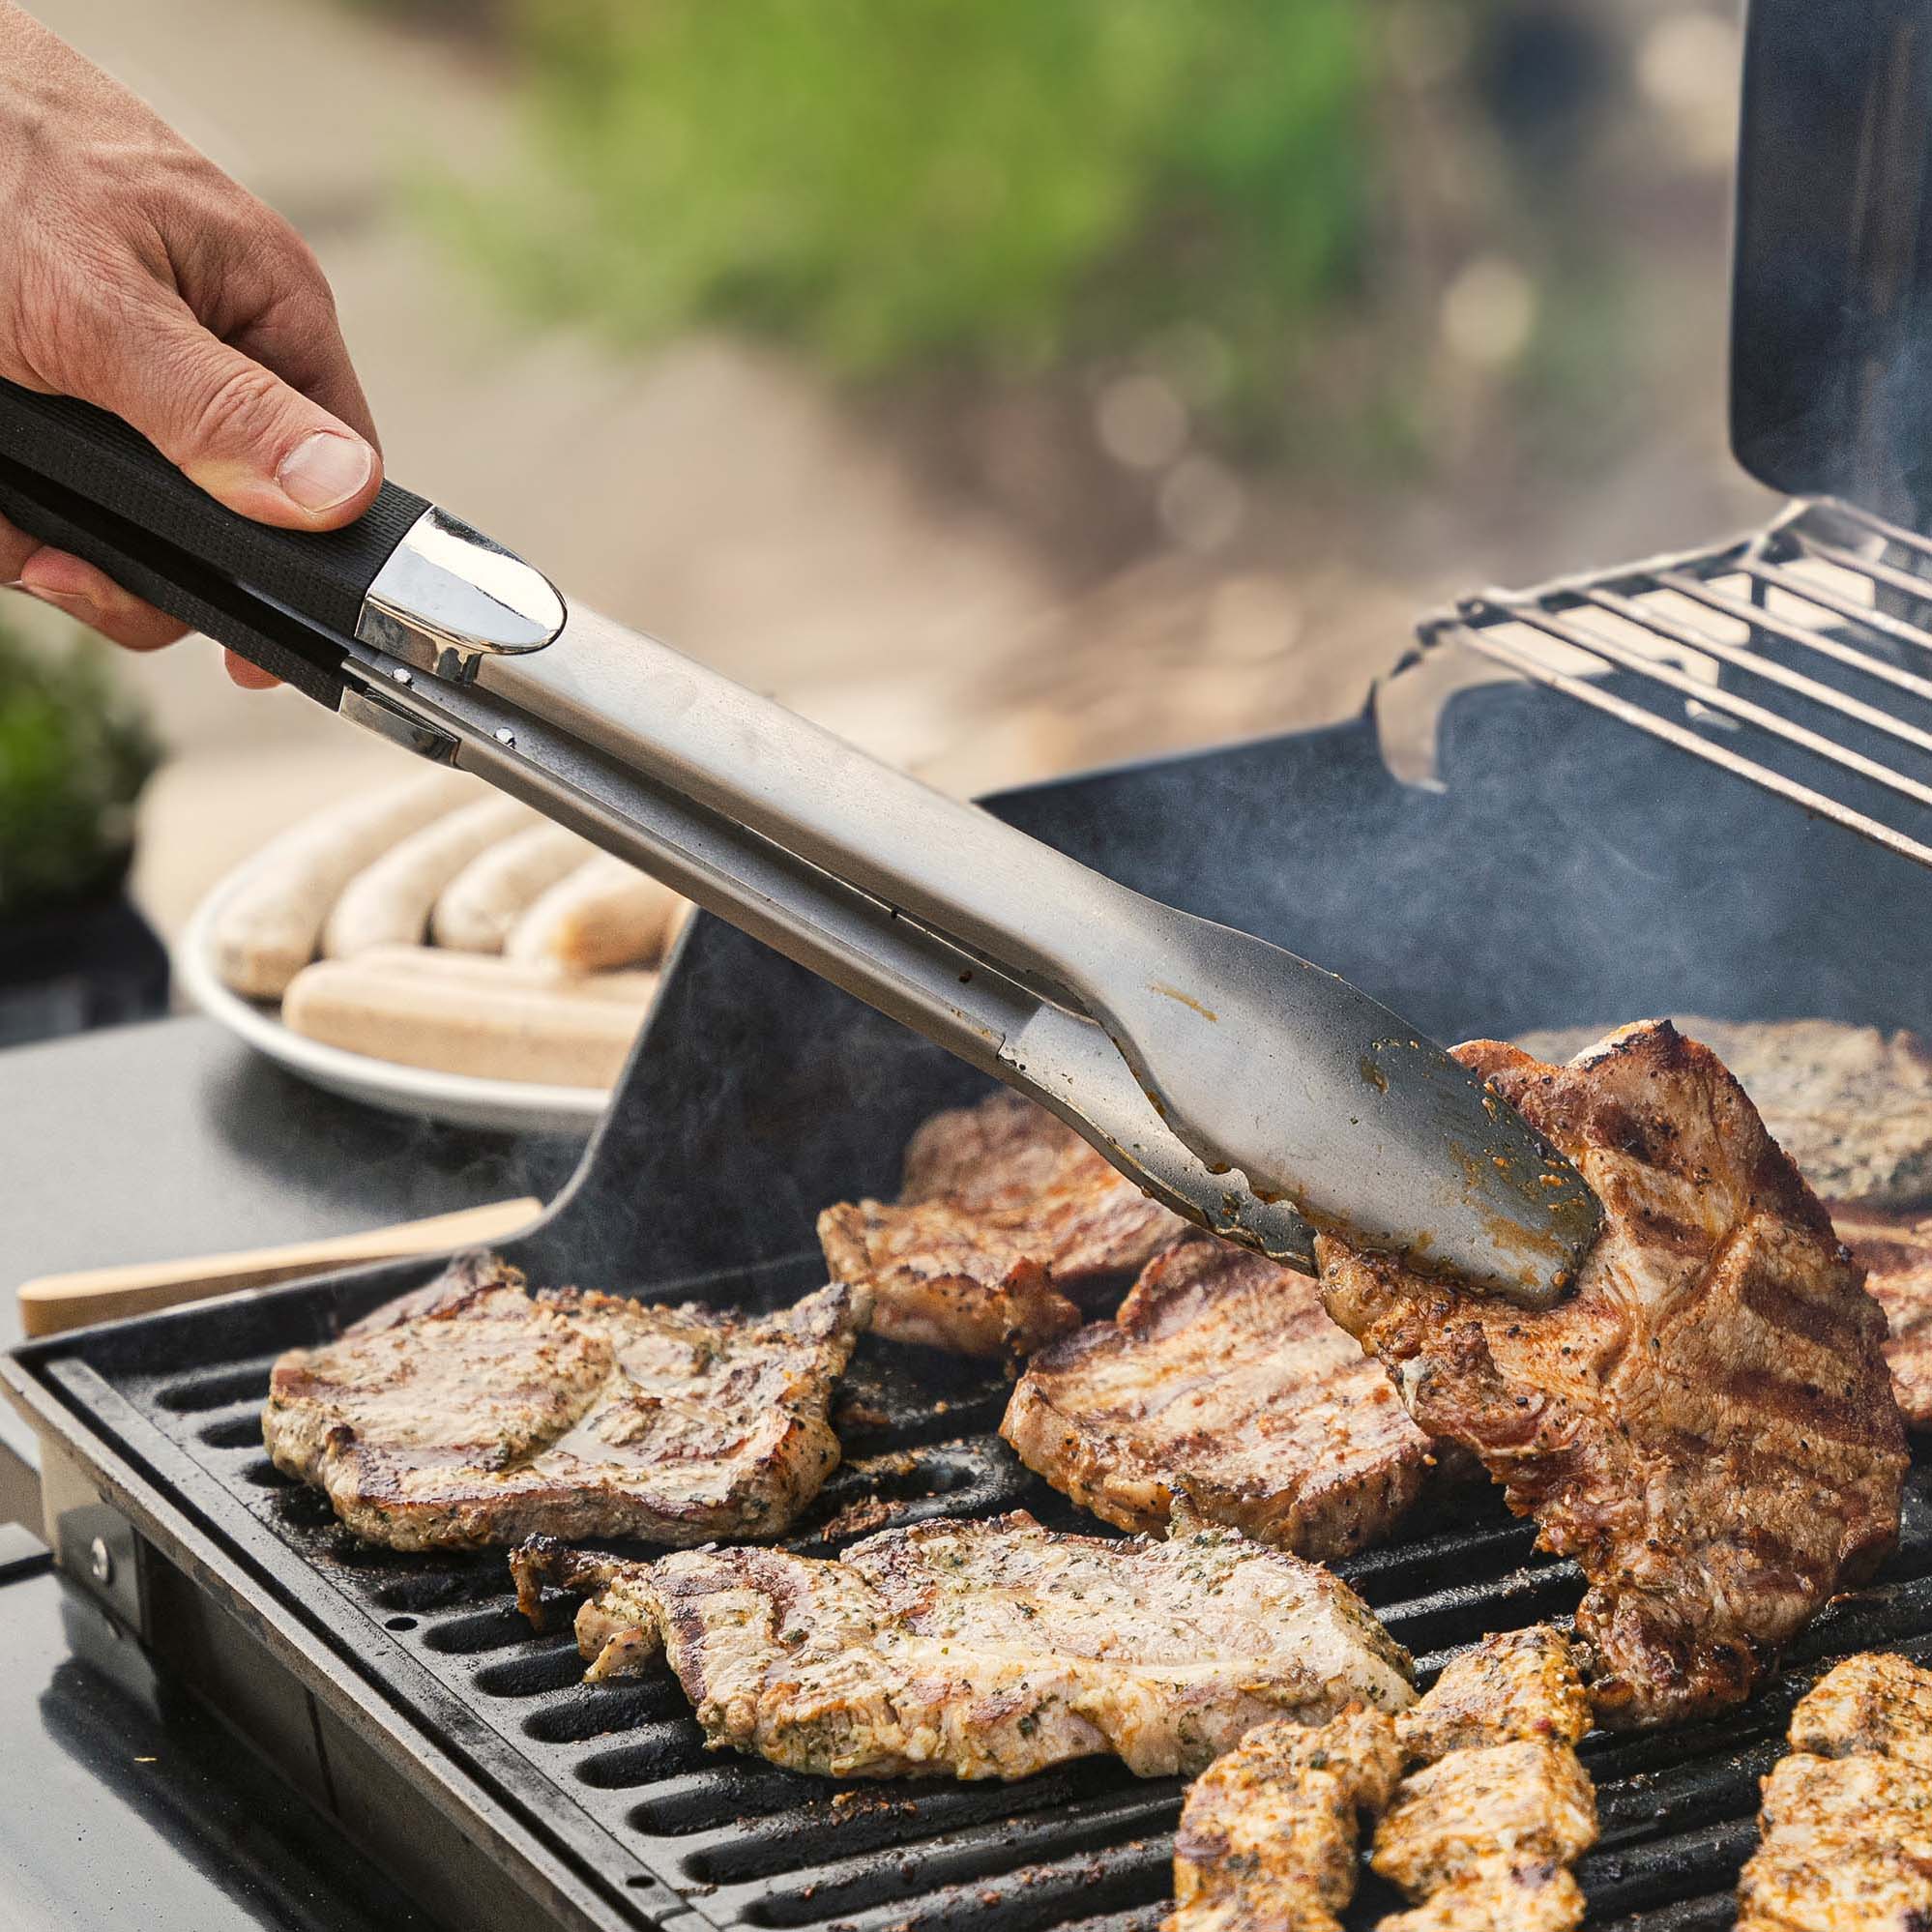 Grille dein perfektes Steak - Die ultimative Anleitung für die besten Steaks auf jeder Grillparty im Sommer!